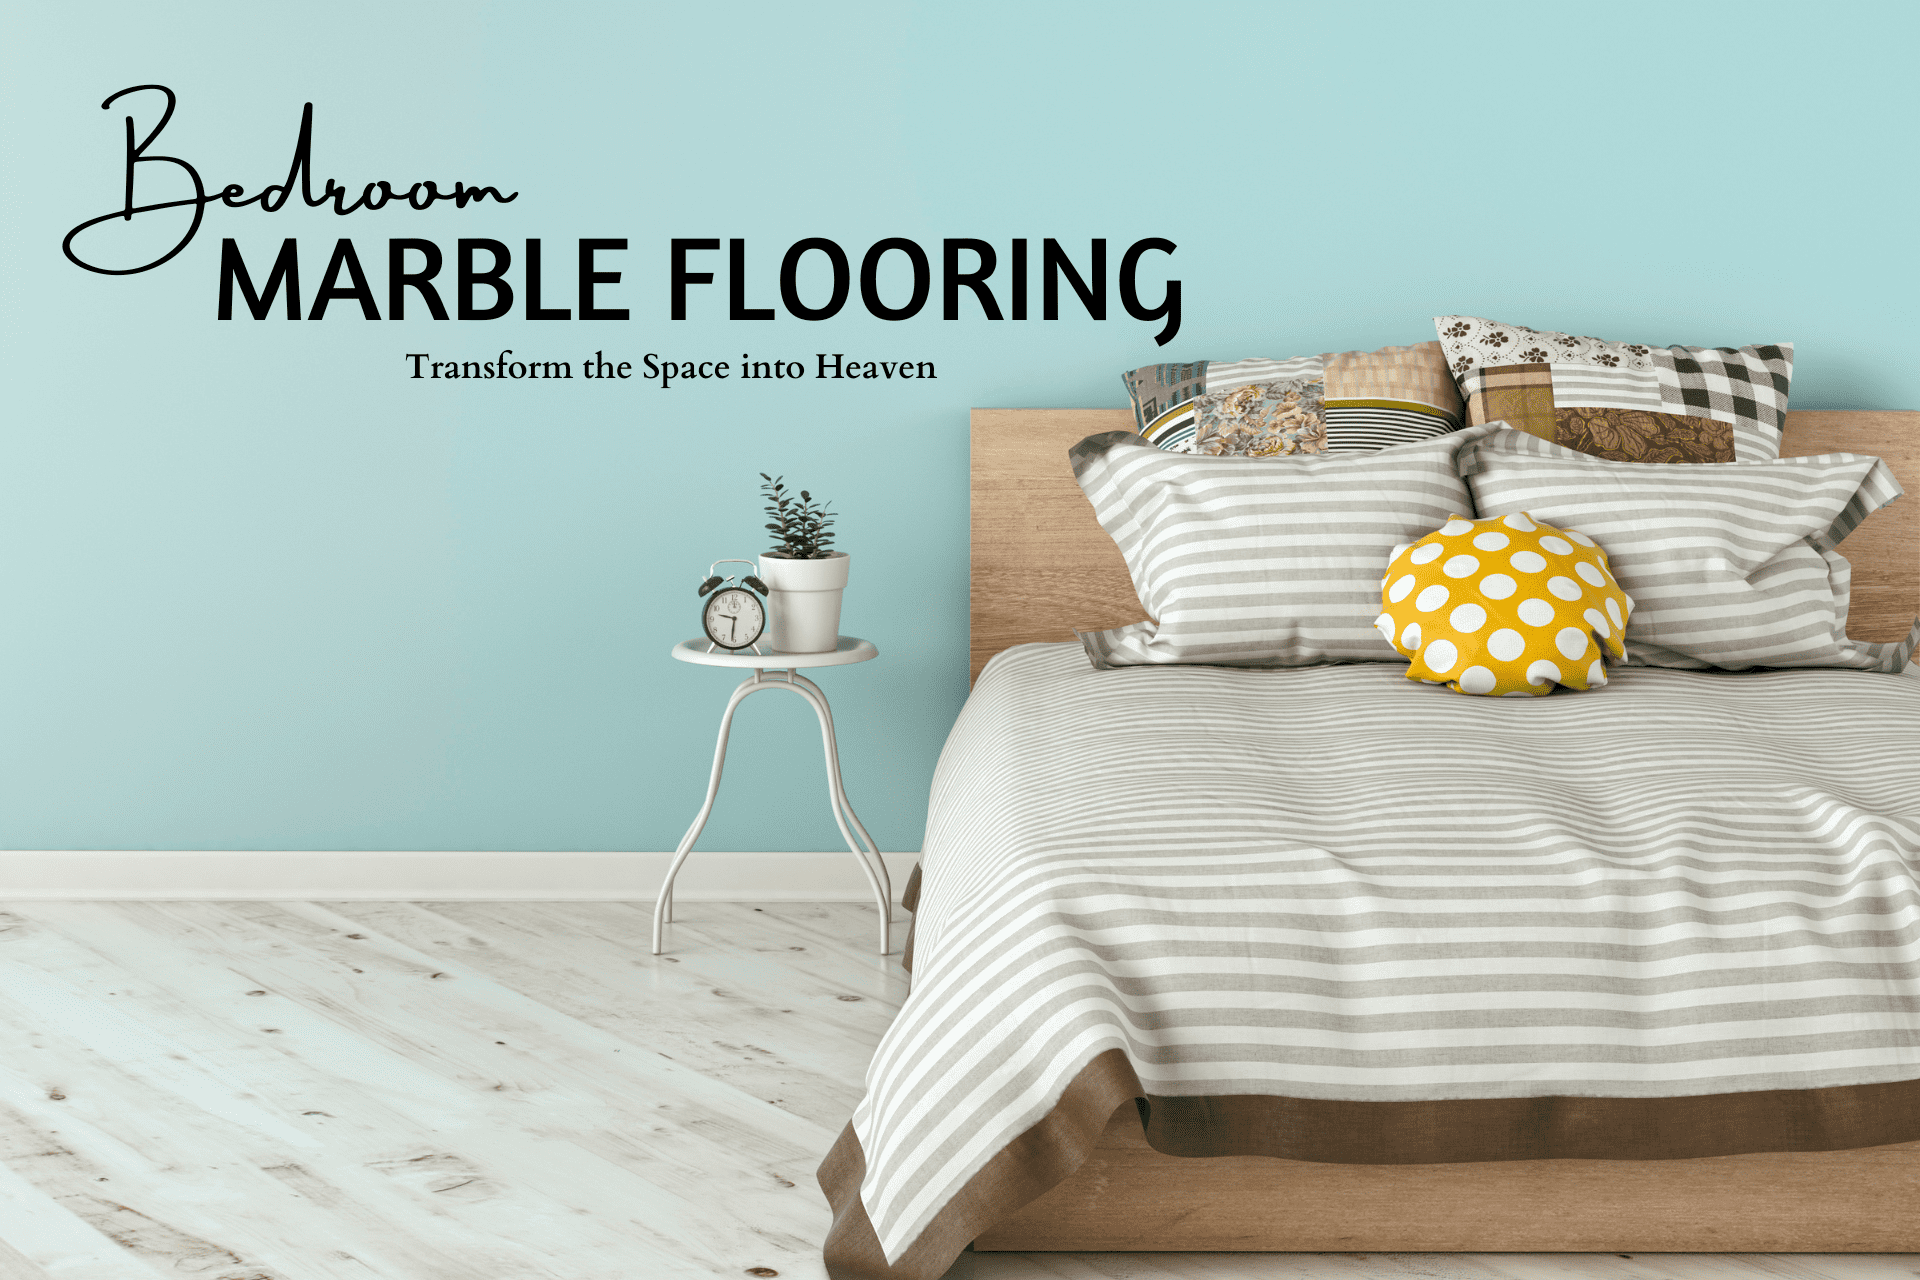 Bedroom Marble Flooring